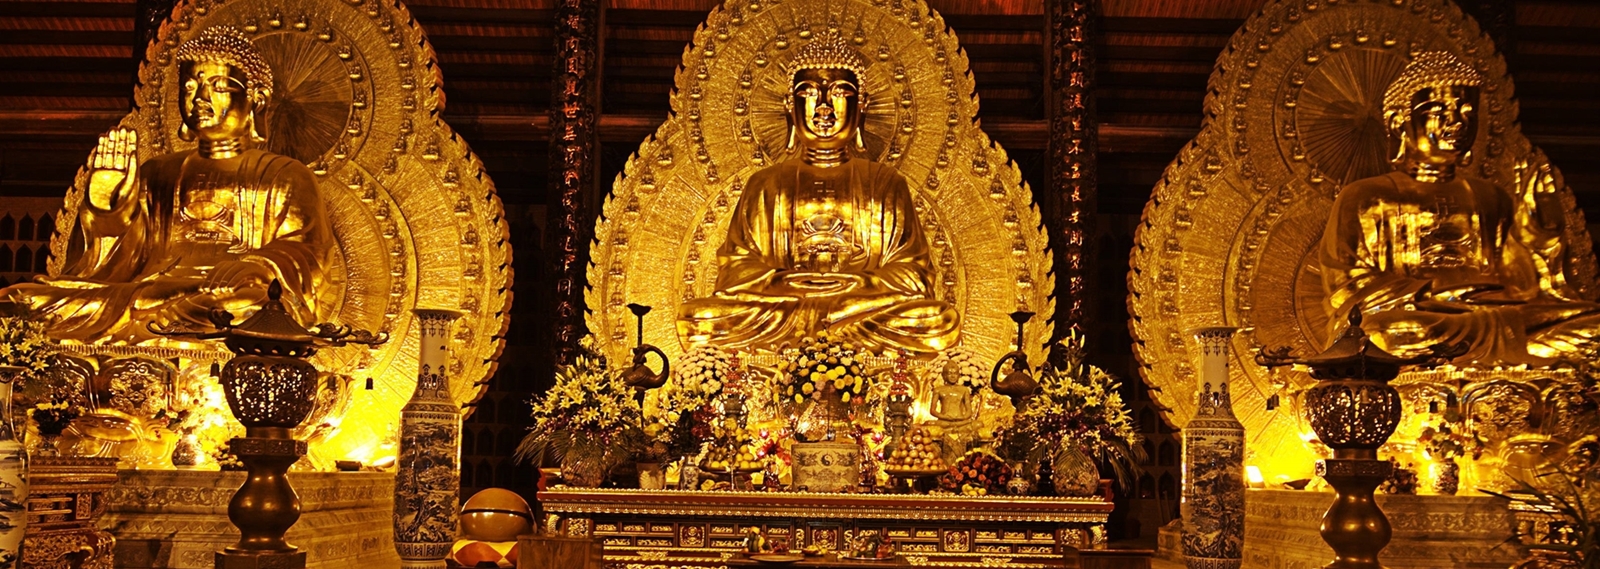 Bai Dinh Pagoda – Trang An – Mua Cave – Cuc Phuong National Park 2 Days 1 Night